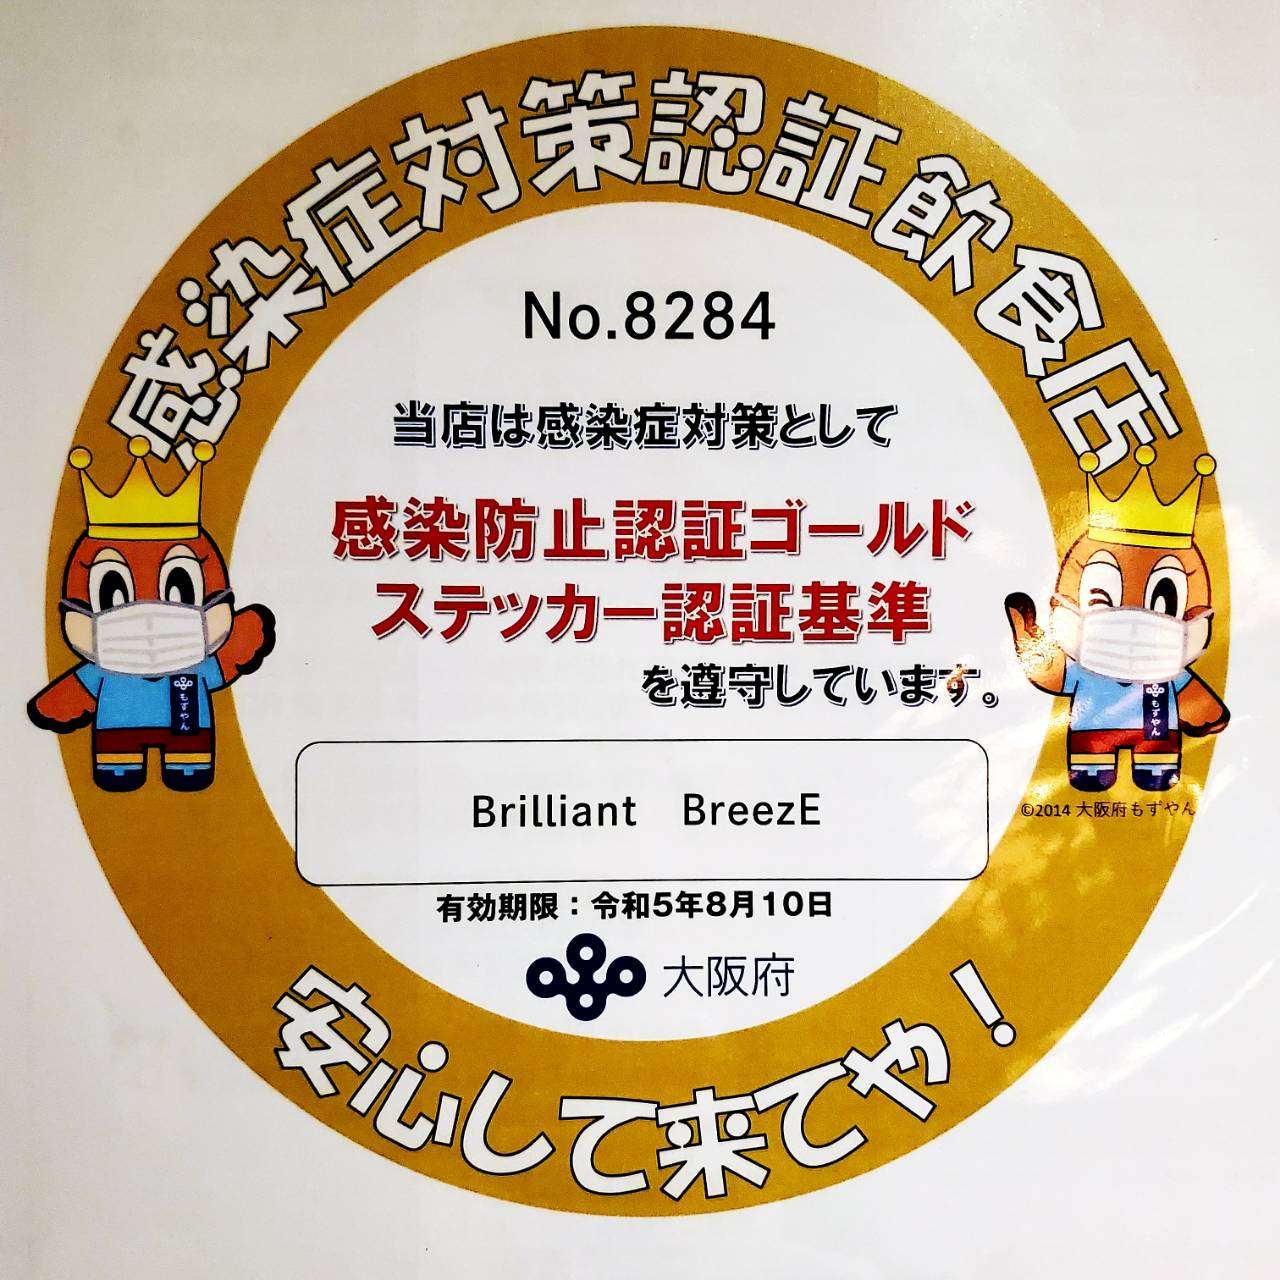 大阪生野区のBAR／Brilliant BreezEゴールドステッカー更新となりました(#^^#)